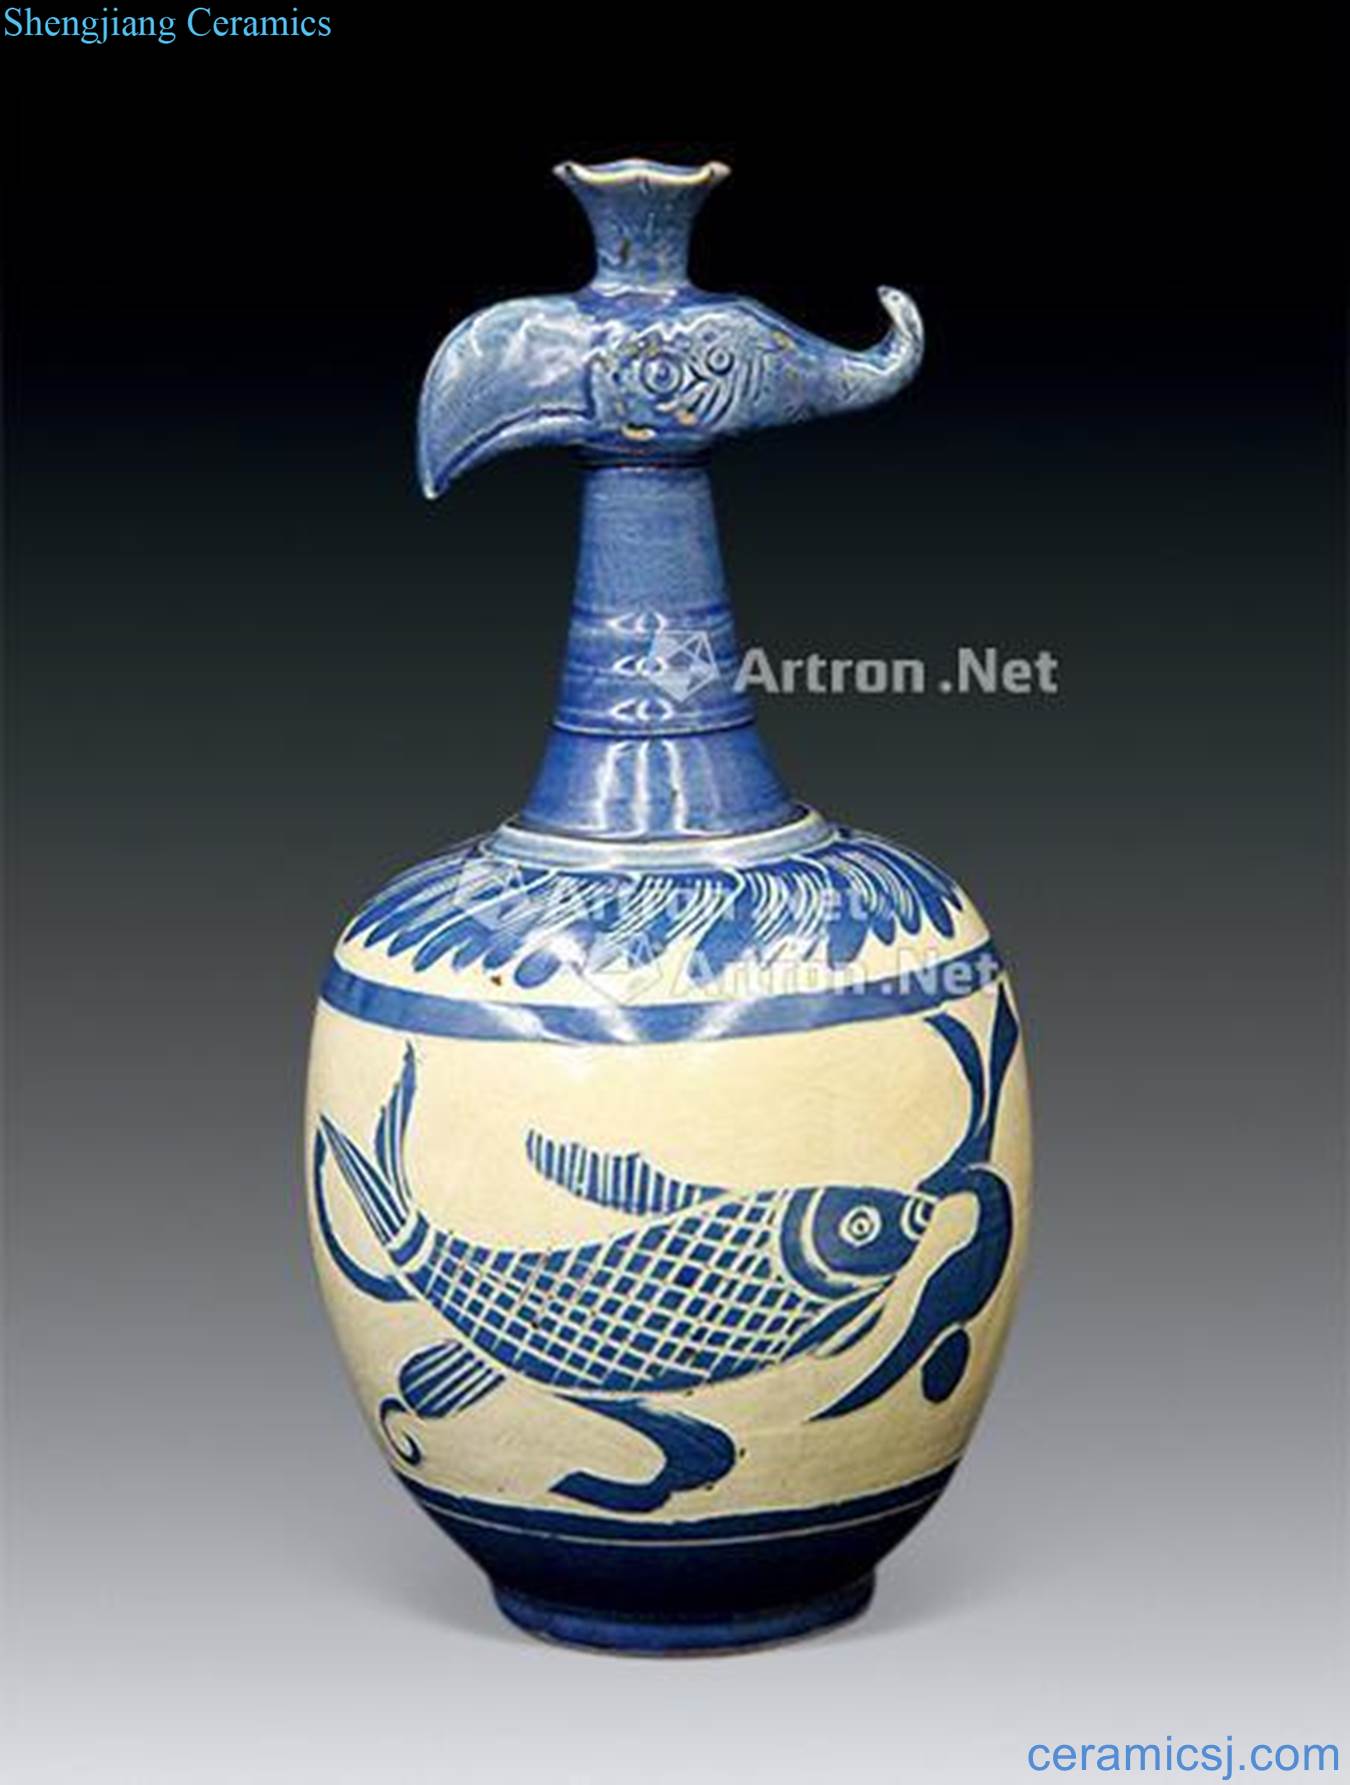 Song dynasty kiln albacore wen feng mouth bottle